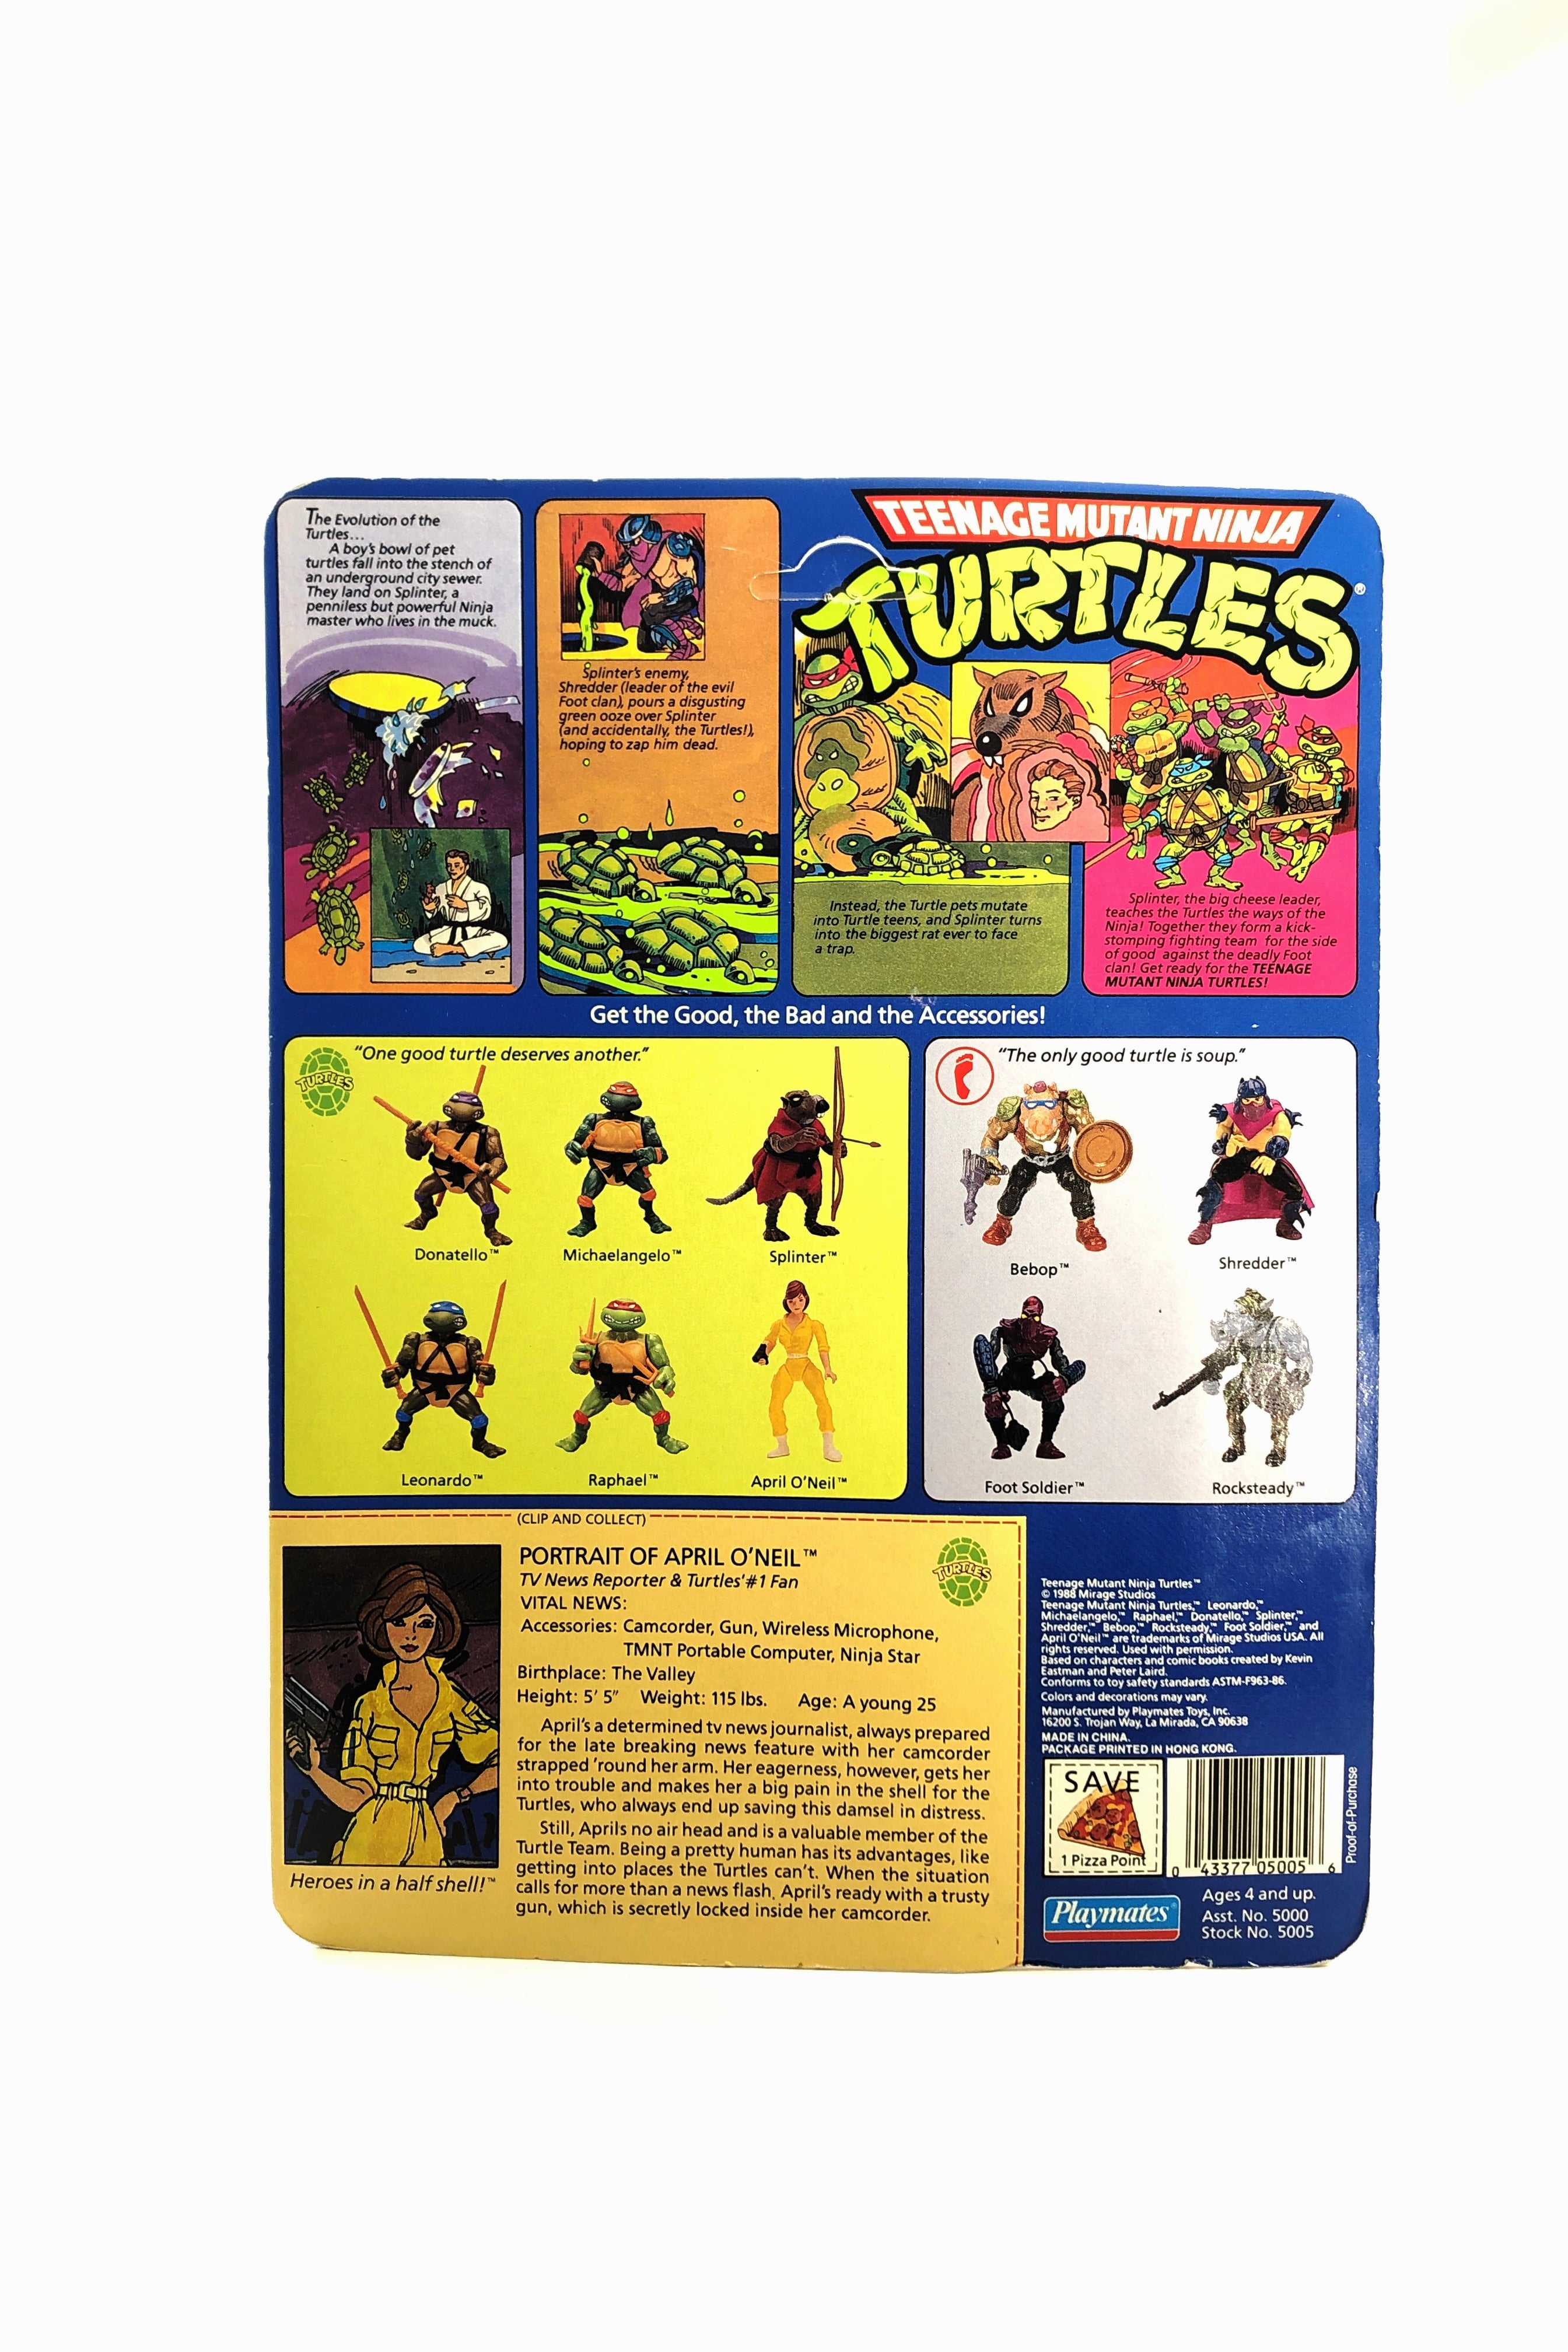 Teenage Mutant Ninja Turtles April O'neal (Playmates, 1988)-3